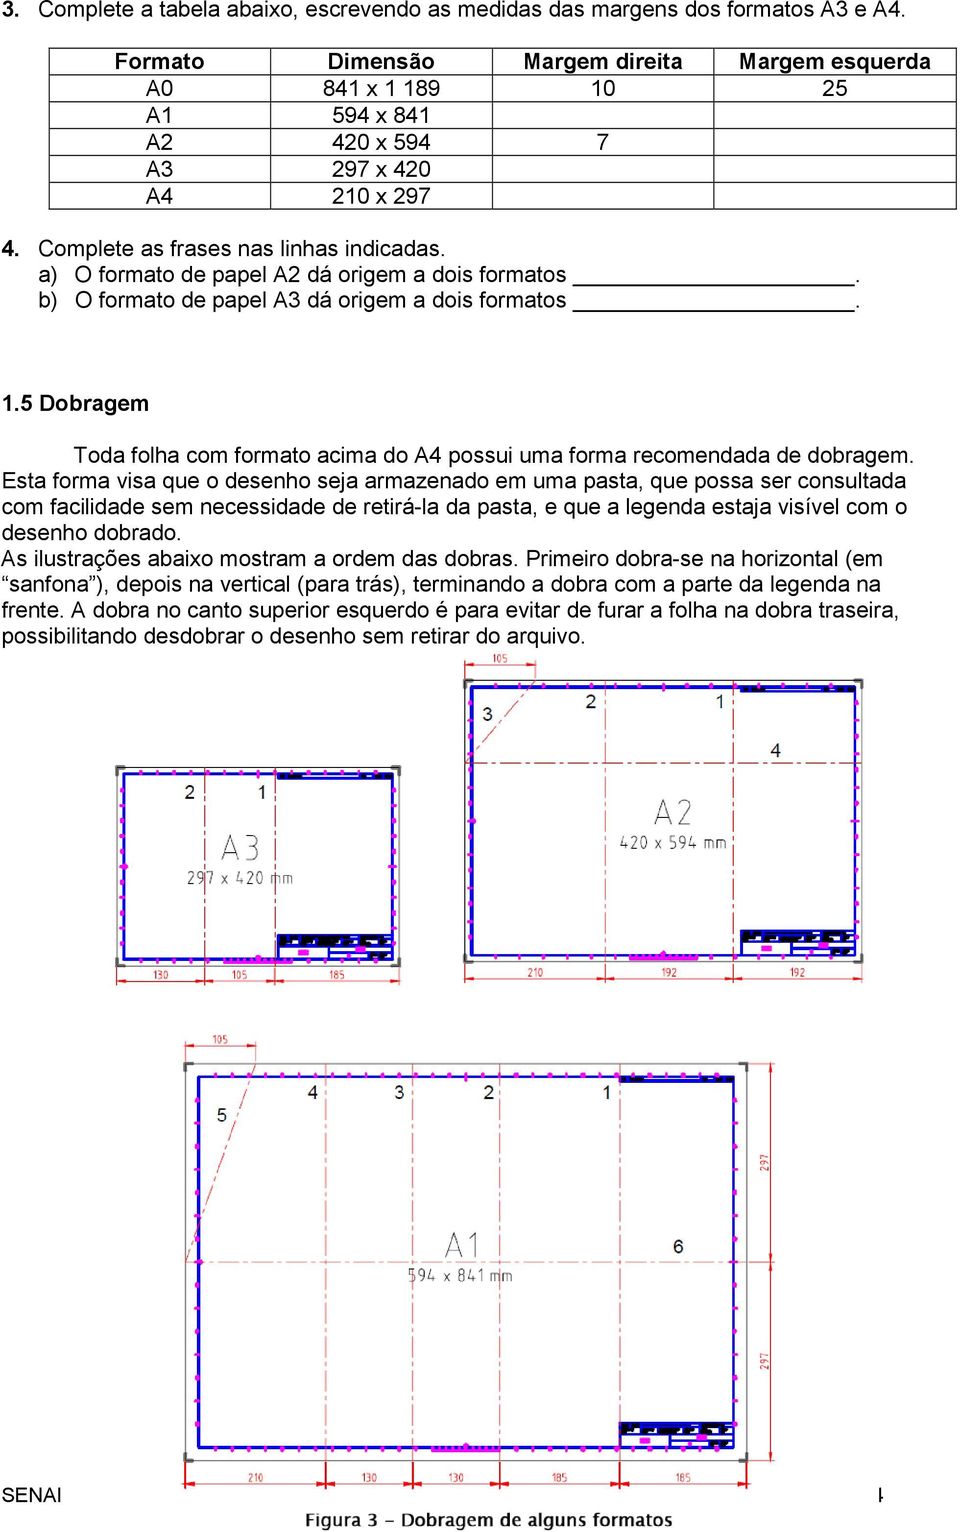 a) O formato de papel A2 dá origem a dois formatos. b) O formato de papel A3 dá origem a dois formatos. 1.5 Dobragem Toda folha com formato acima do A4 possui uma forma recomendada de dobragem.